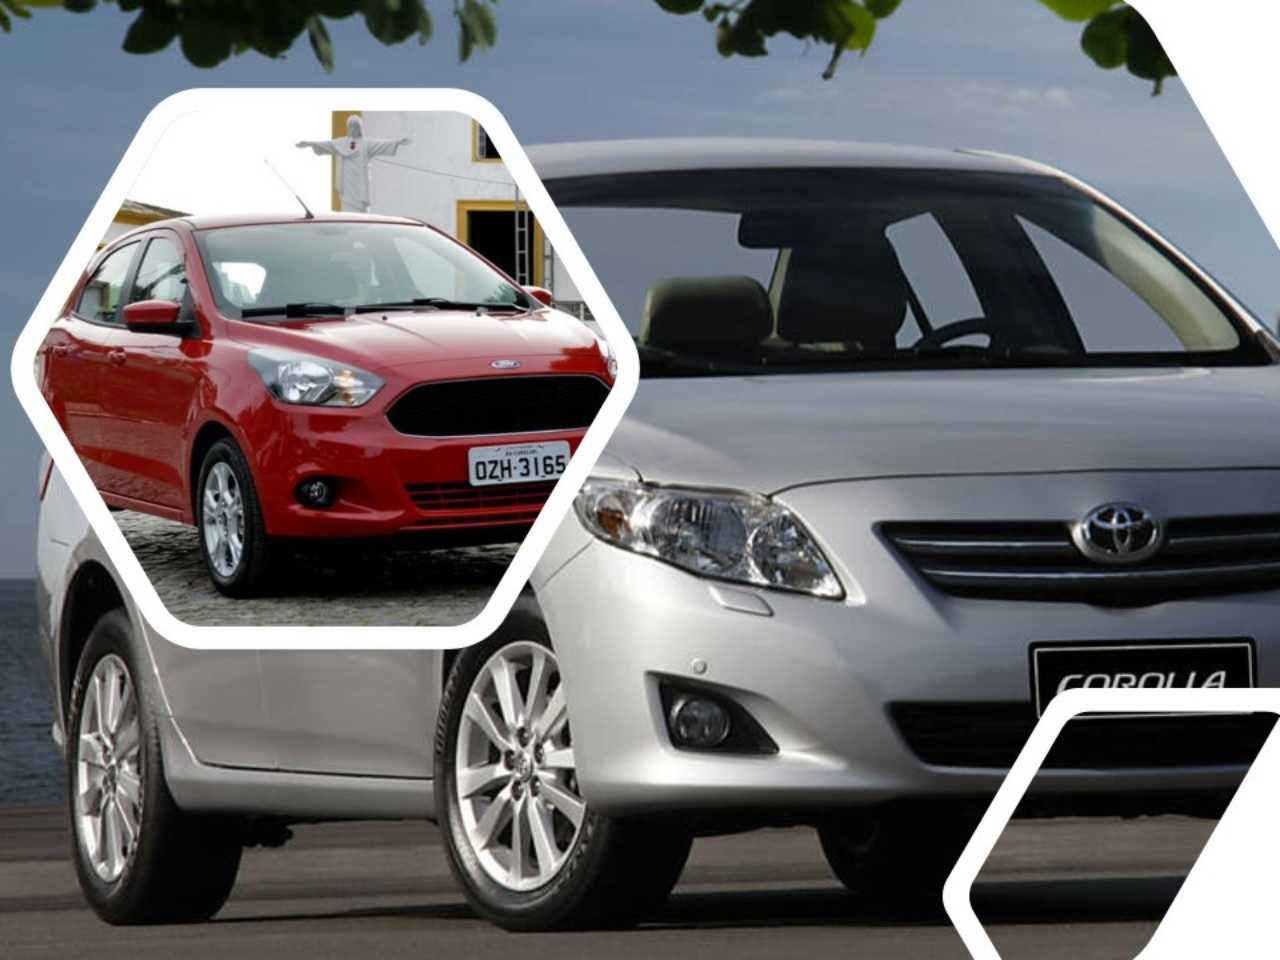 Toyota Corolla e Ford Ka podem ser encontrados at R$ 50 mil no mercado de usados hoje em dia